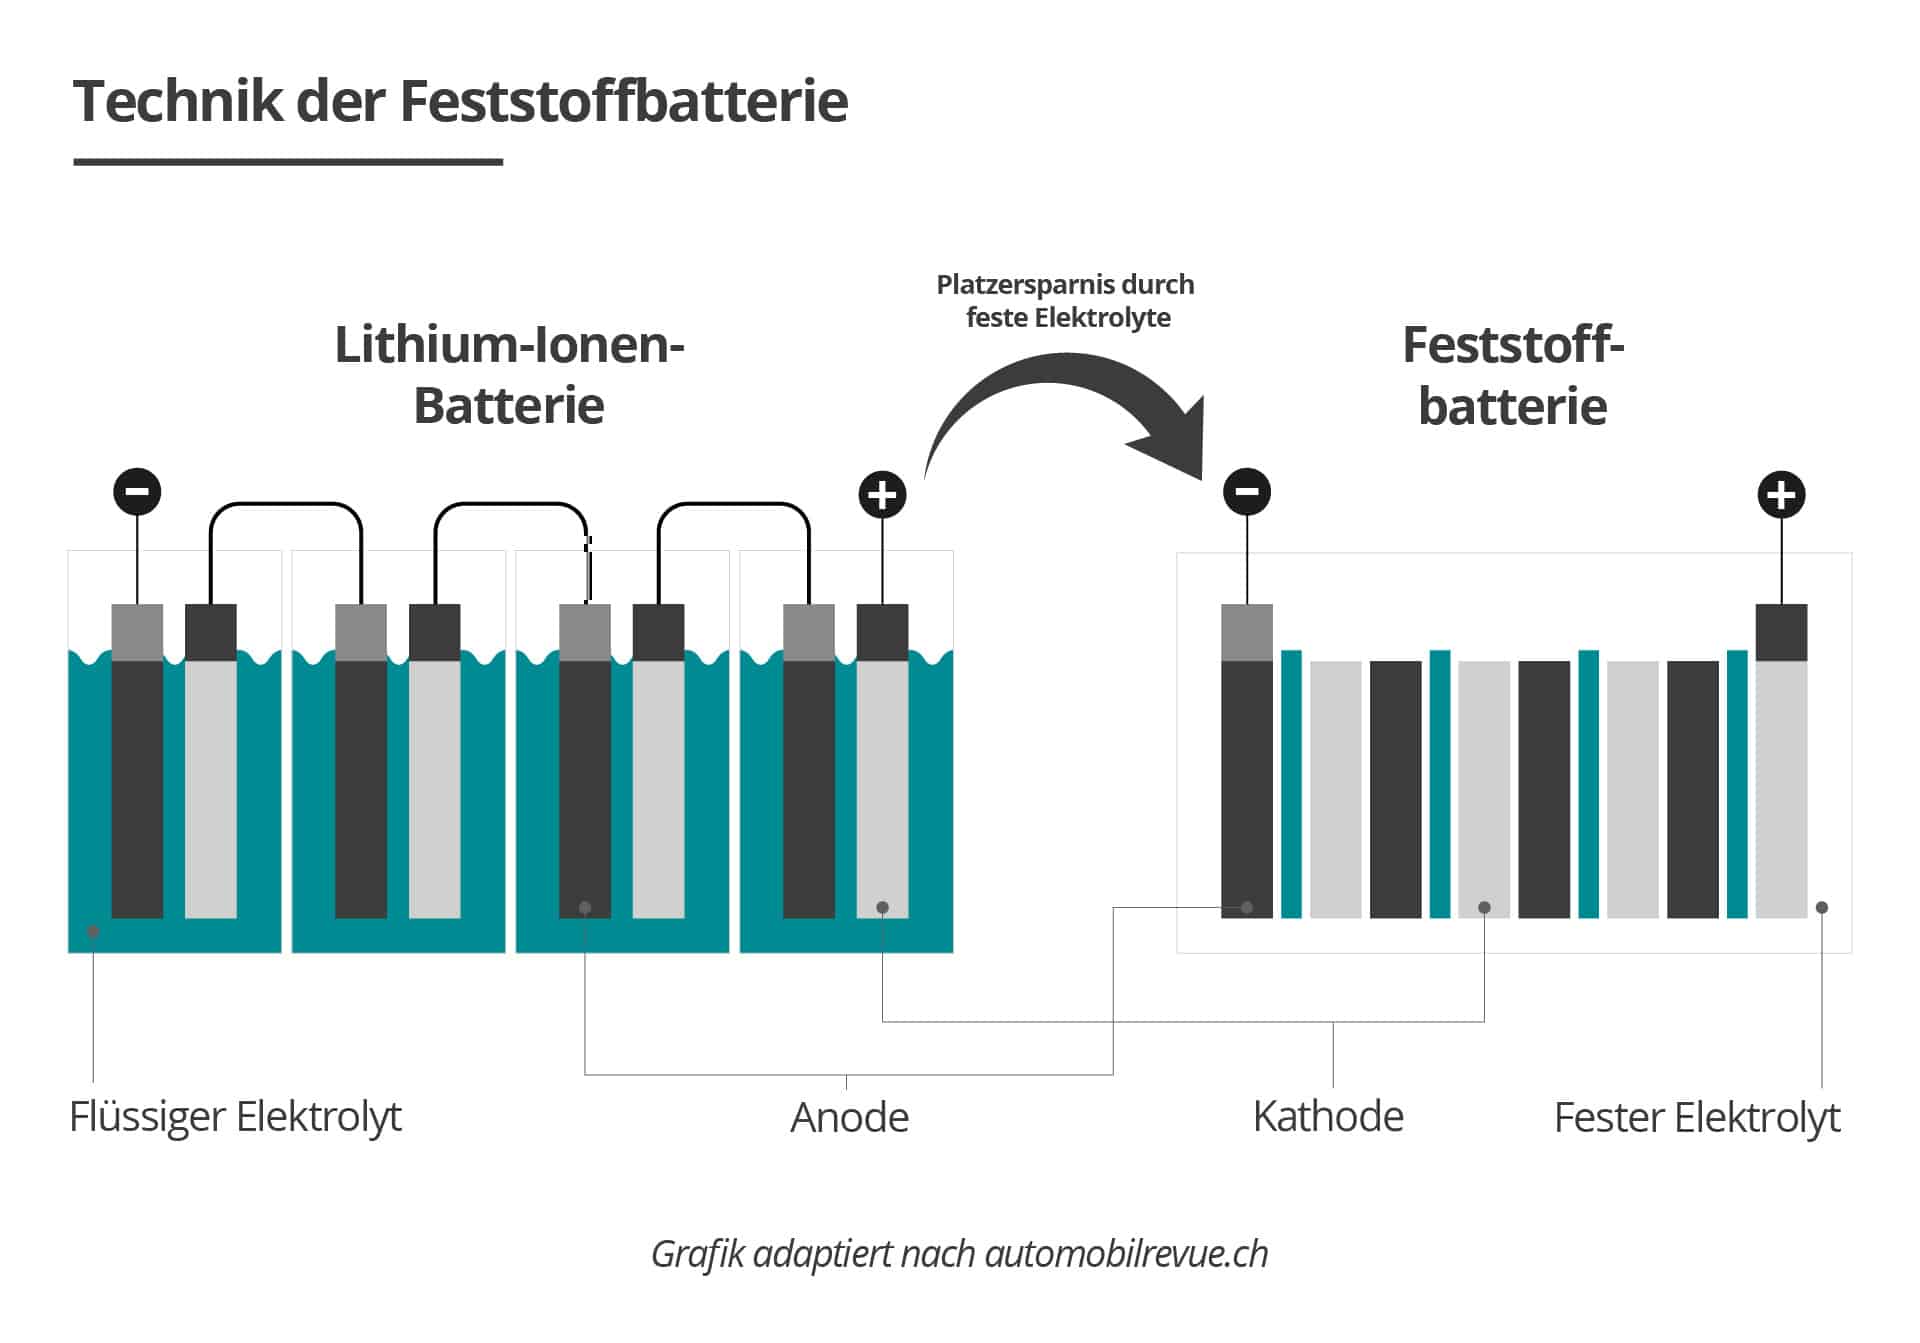 Wir zeigen die Platzersparnis durch feste Elektrolyte in einer Feststoffbatterie